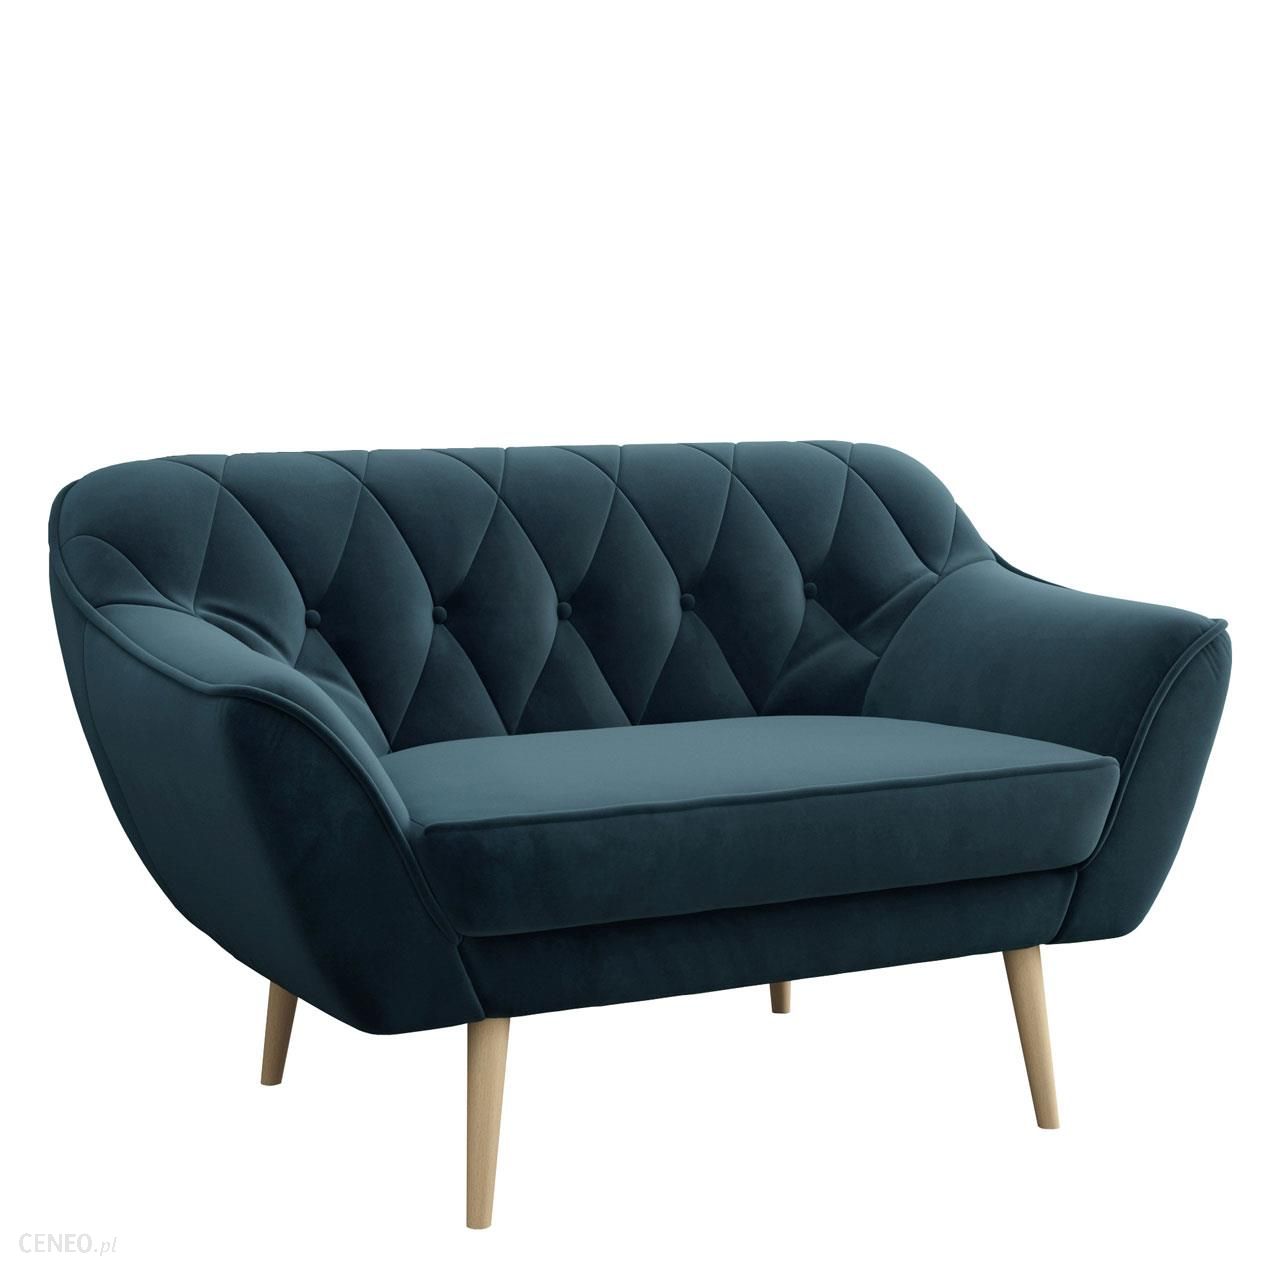 Skandynawska dwuosobowa sofa na wysokich nóżkach PIRS 2 ciemnoniebieska